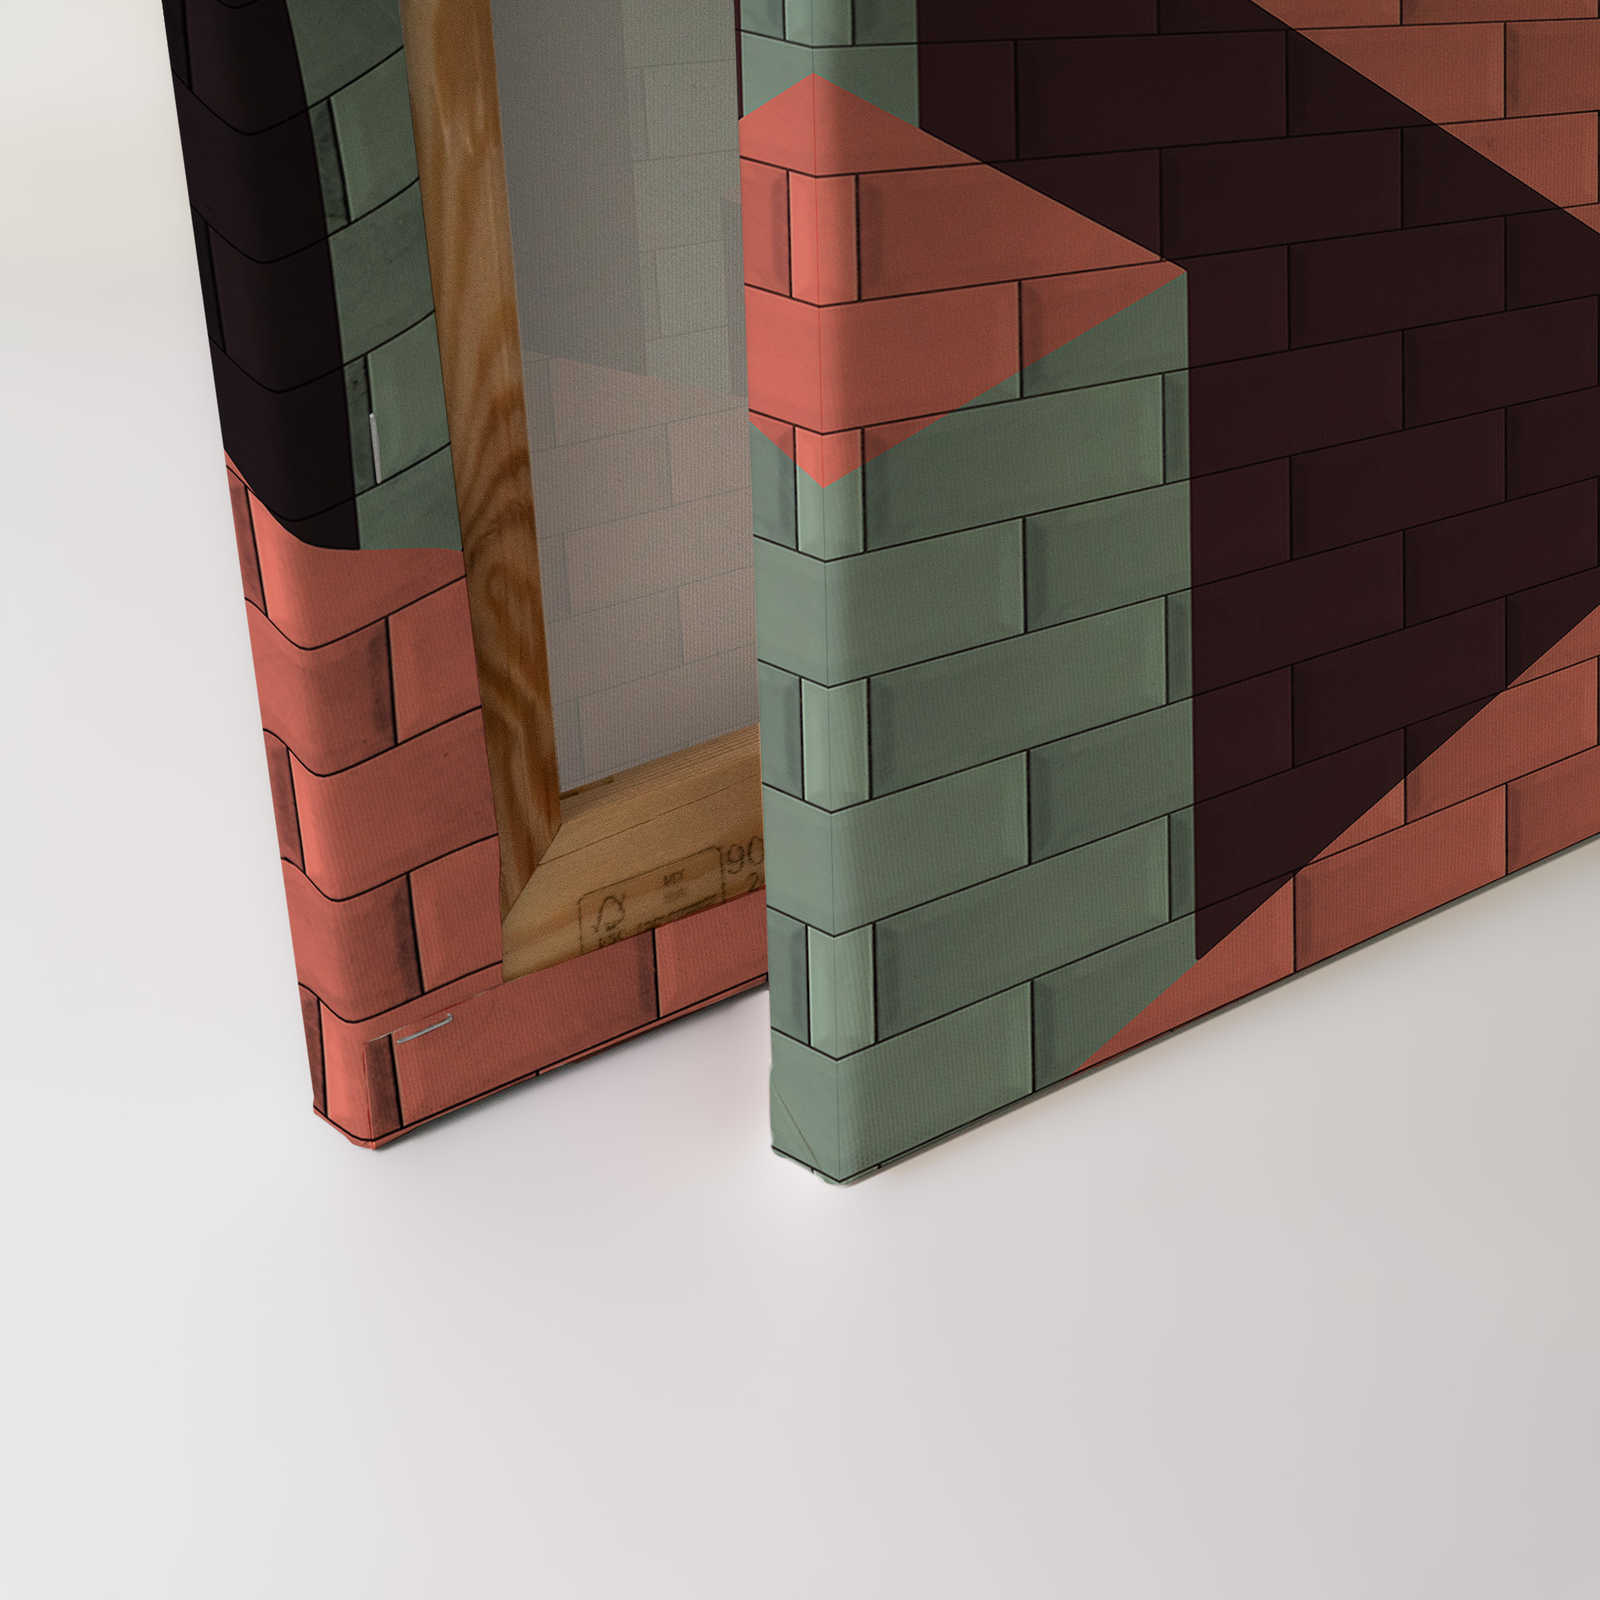             Leinwandbild Ziegelsteinmauer mit Block-Bemalung | rot, pink, grün – 0,90 m x 0,60 m
        